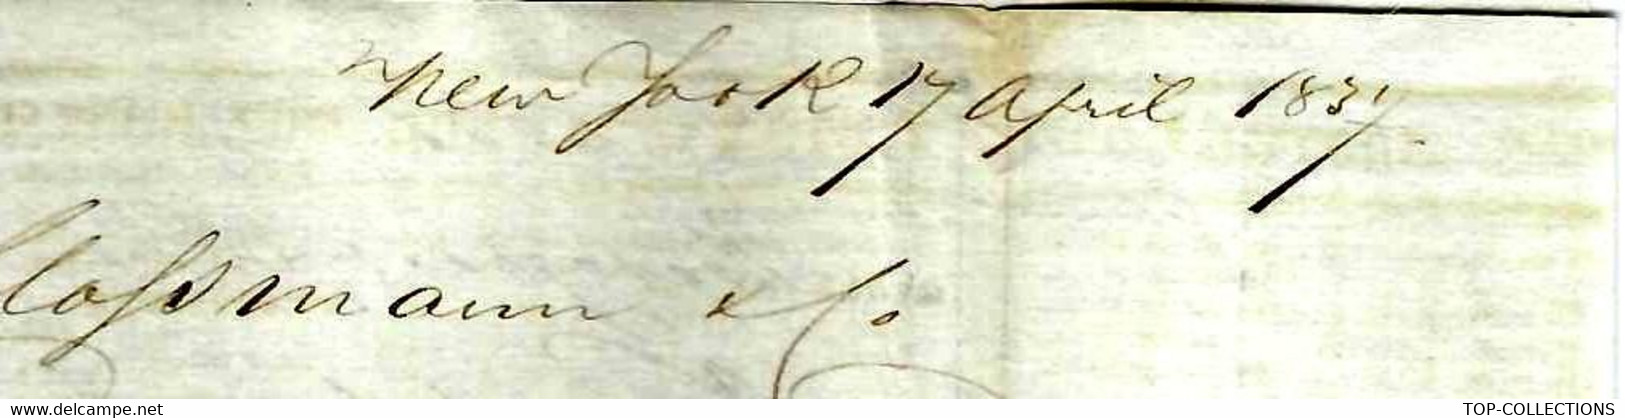 1837  New York Lettre Imprimé De Cotation NEGOCE COMMERCE INTERNATIONAL France ETATS UNIS  => Clossman  Vins à Bordeaux - Estados Unidos